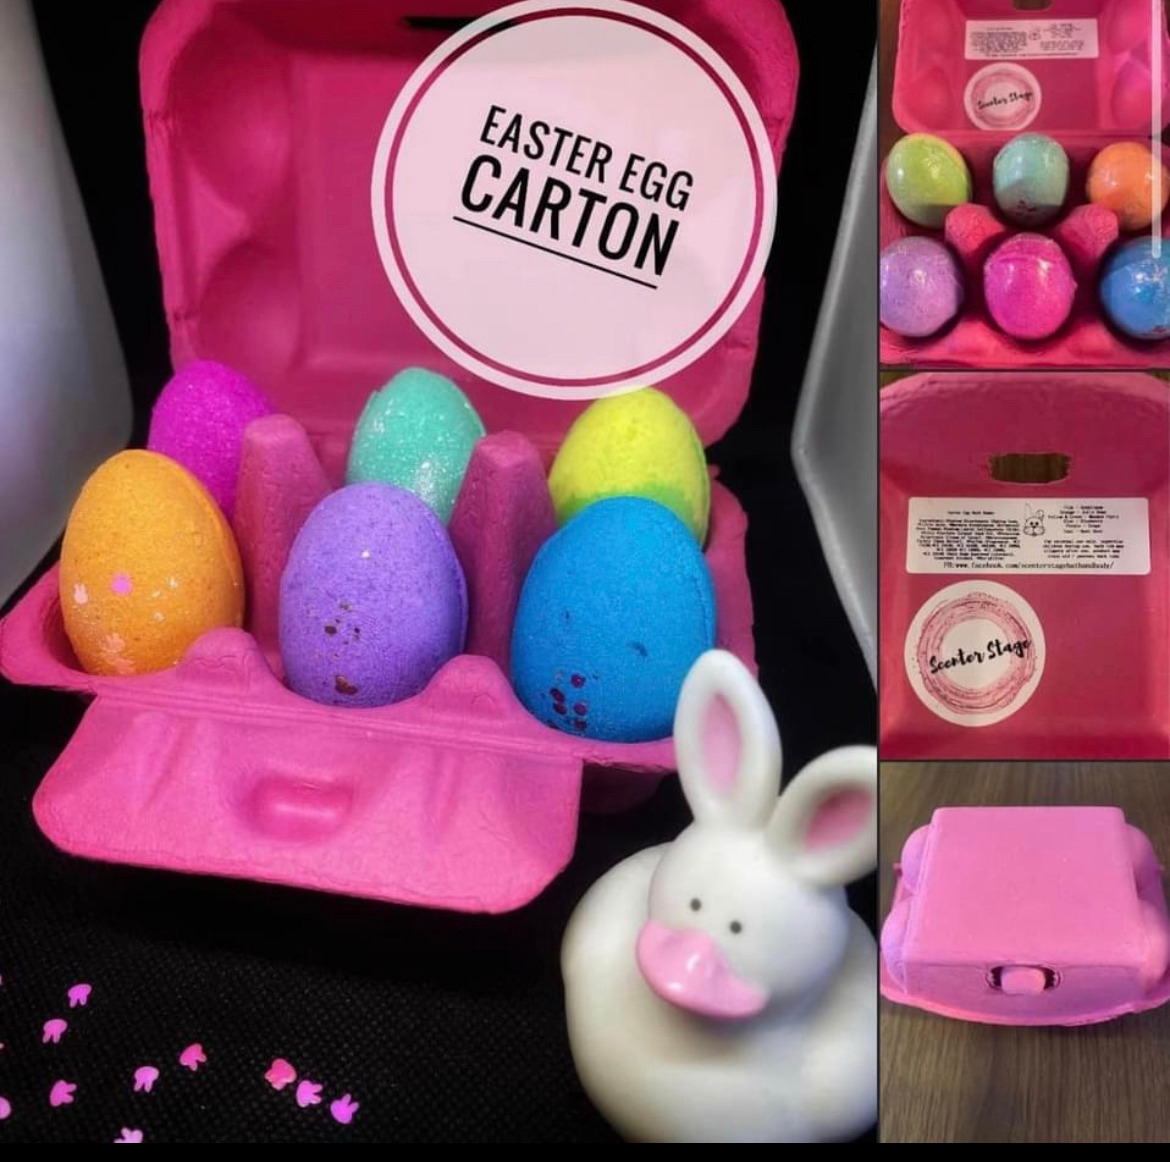 Easter Egg Carton - YELLOW Carton